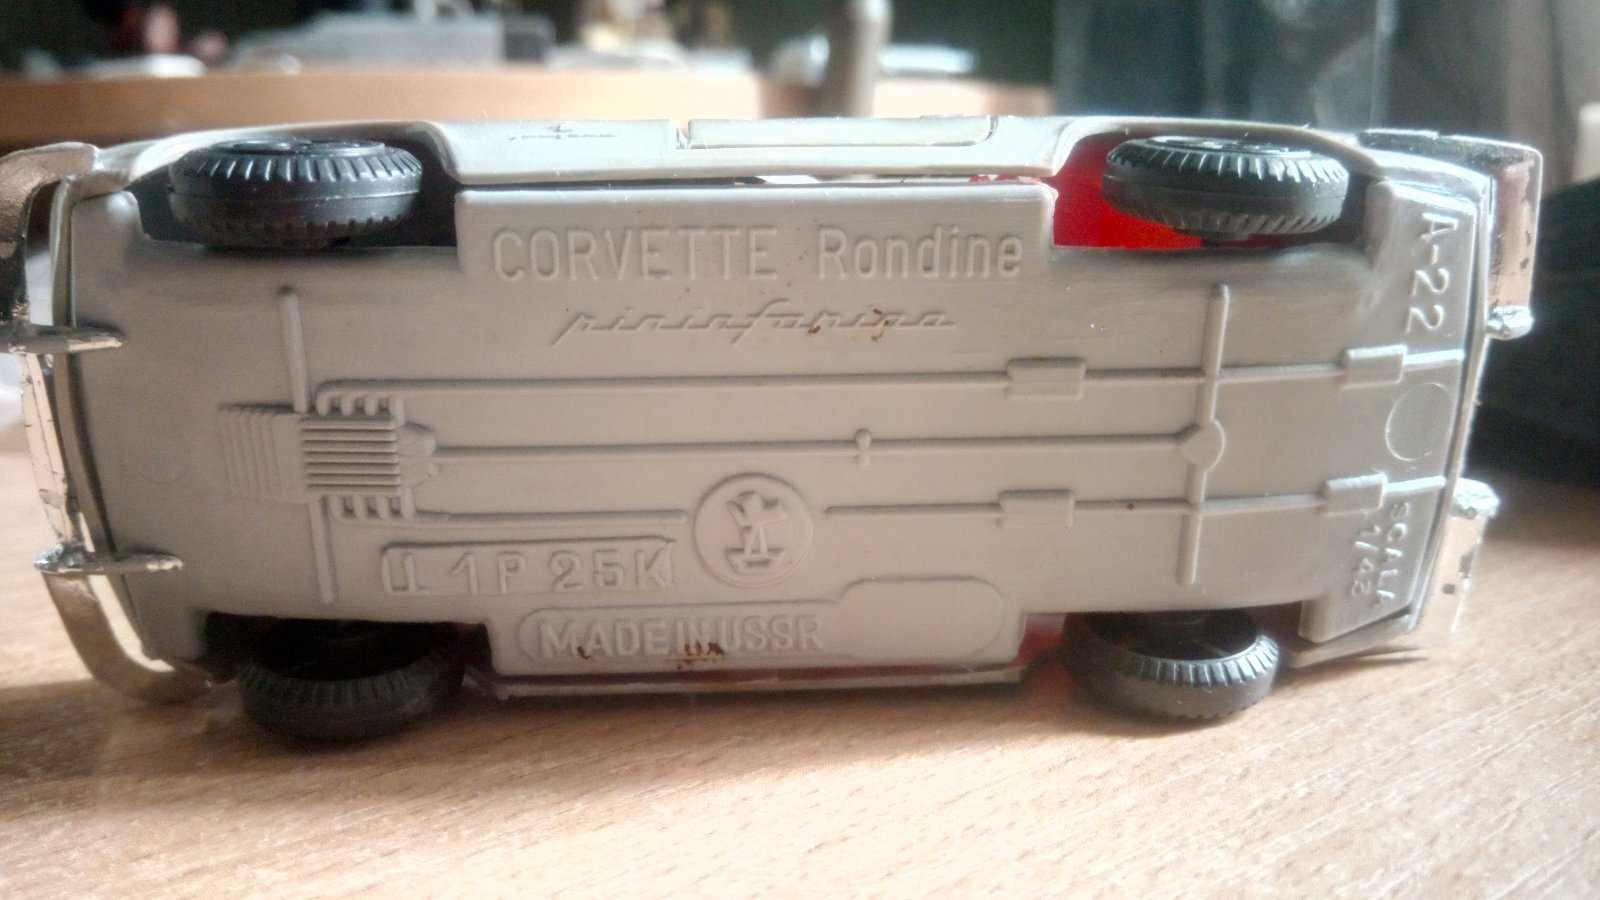 Лянча Lancia 1:43 СССР Корвет Рондине Corvette Rondine